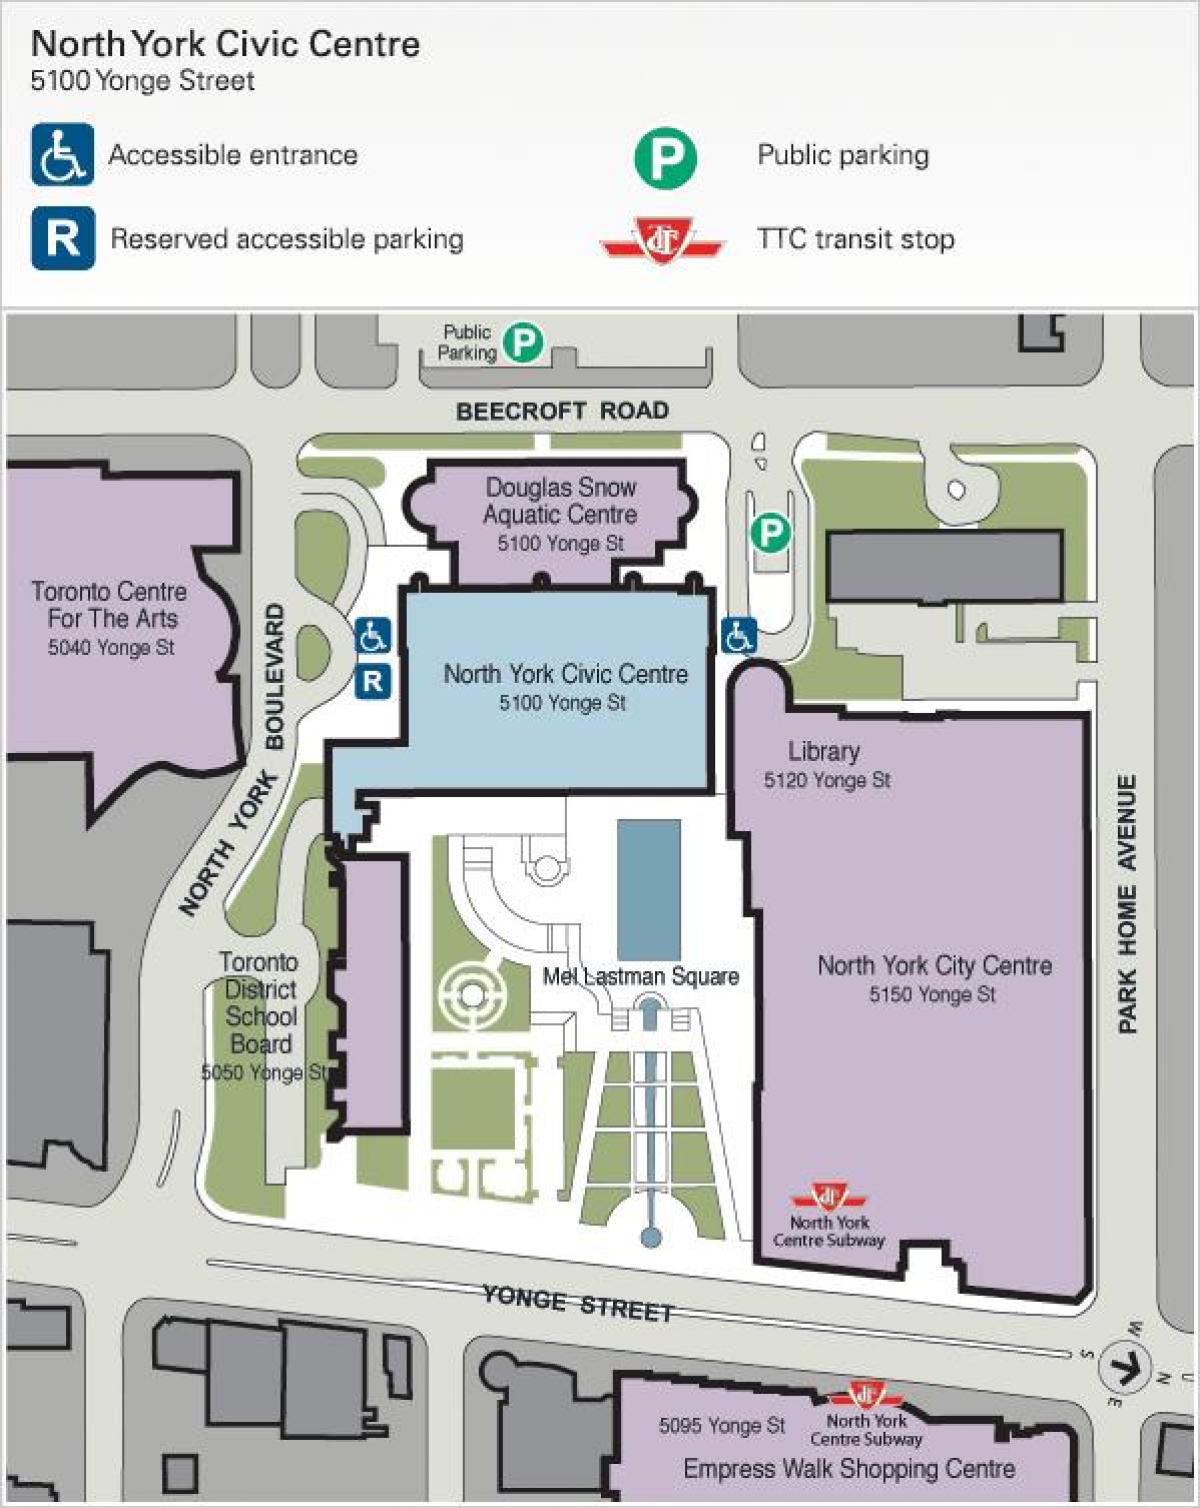 Mapa Toronto Arteen Zentro aparkalekua